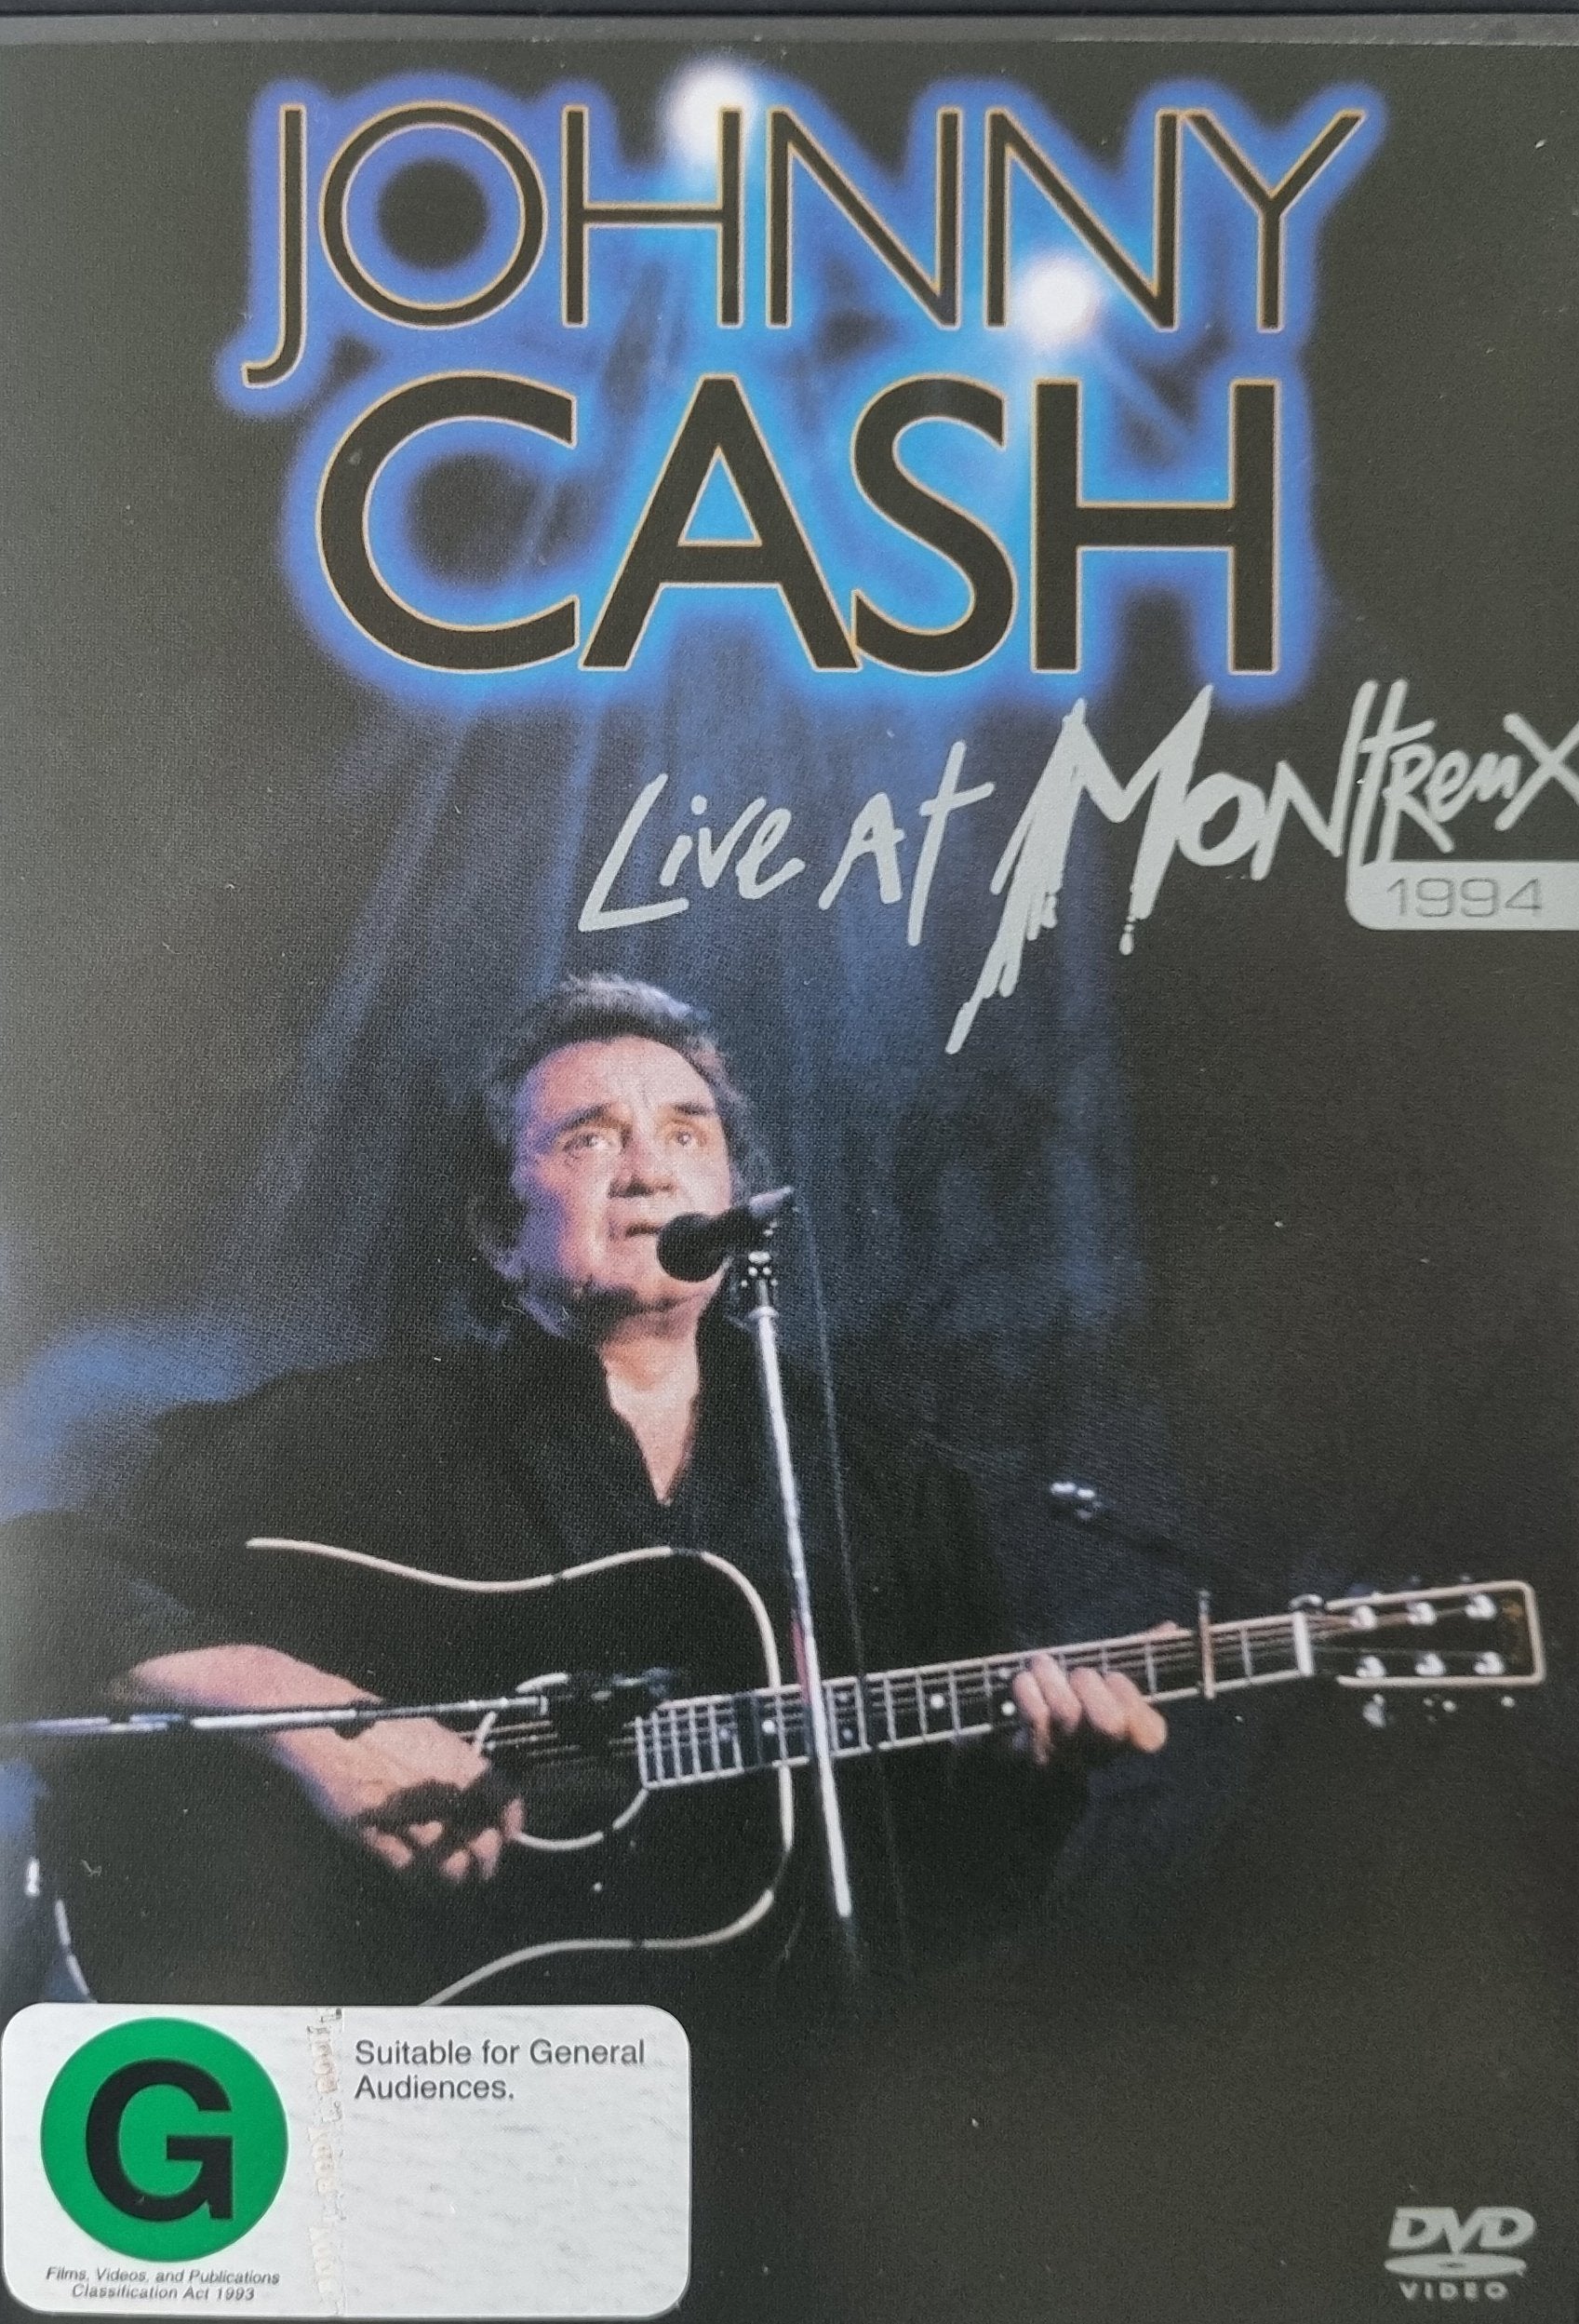 Johnny Cash - Live at Montreux 1994 (DVD)